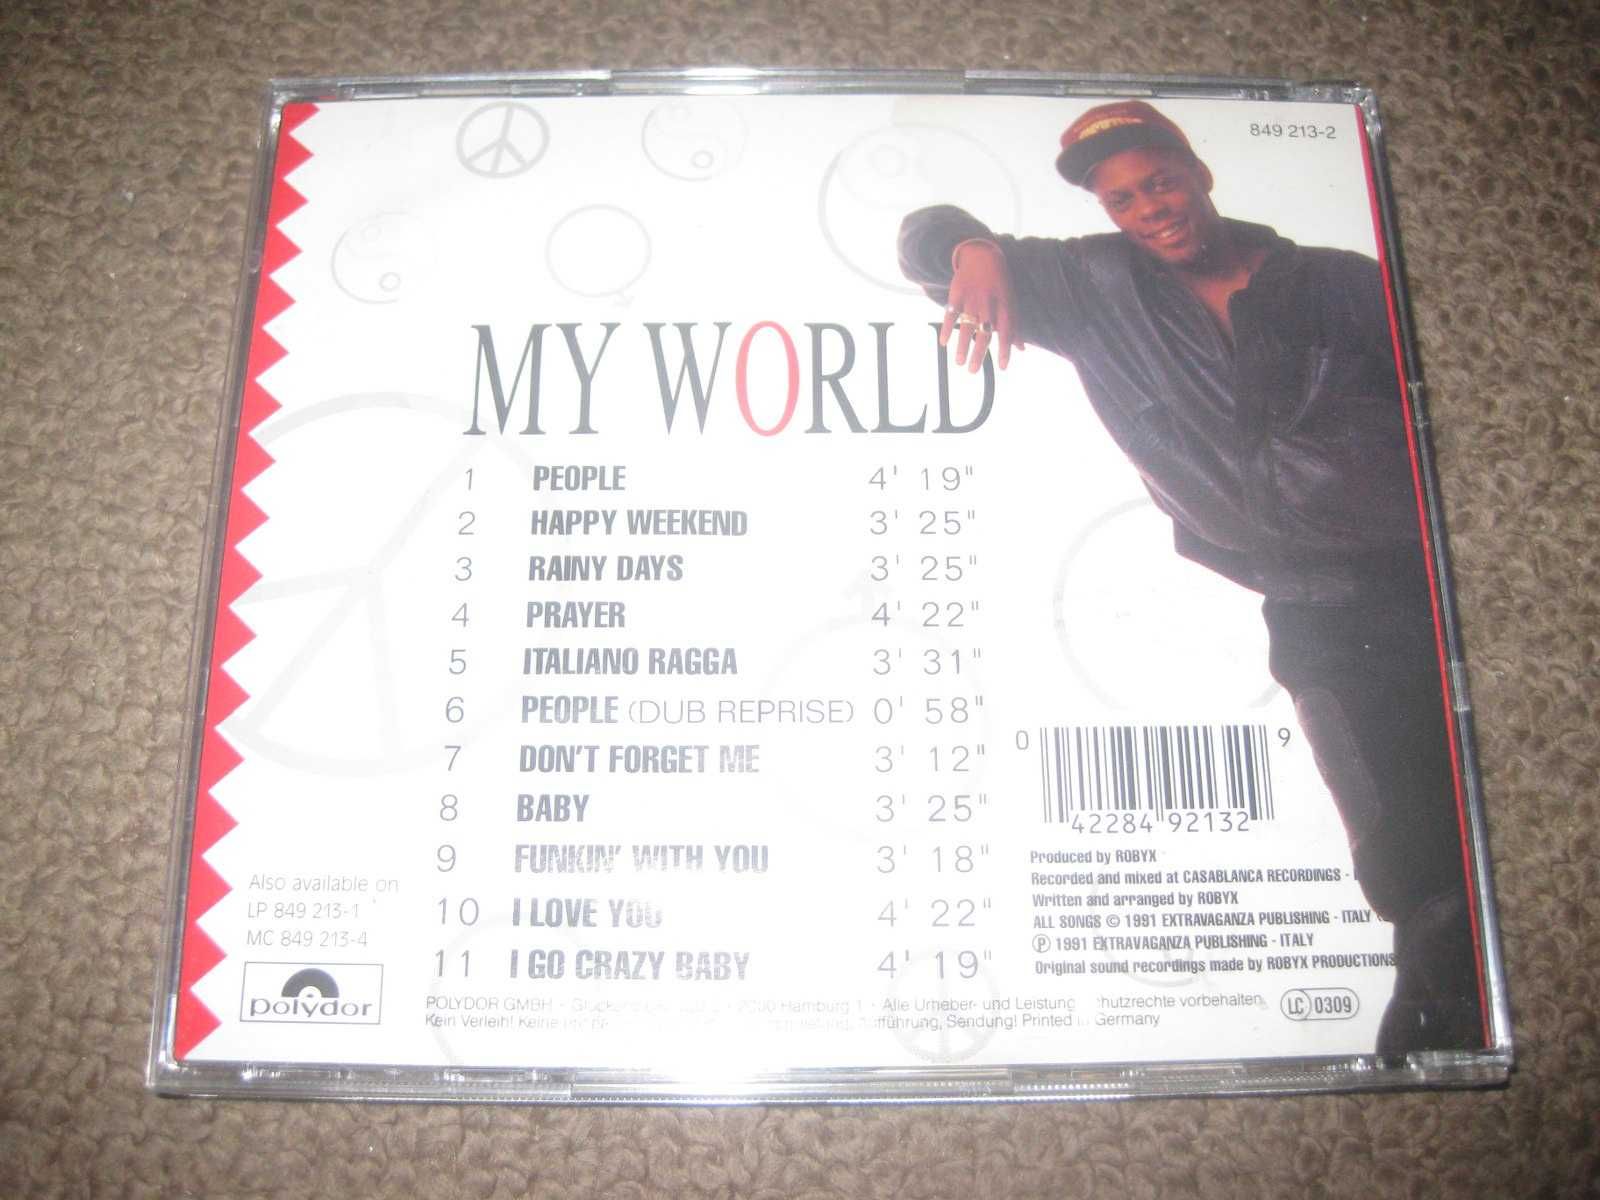 CD do ICE MC "My World" Portes Grátis!